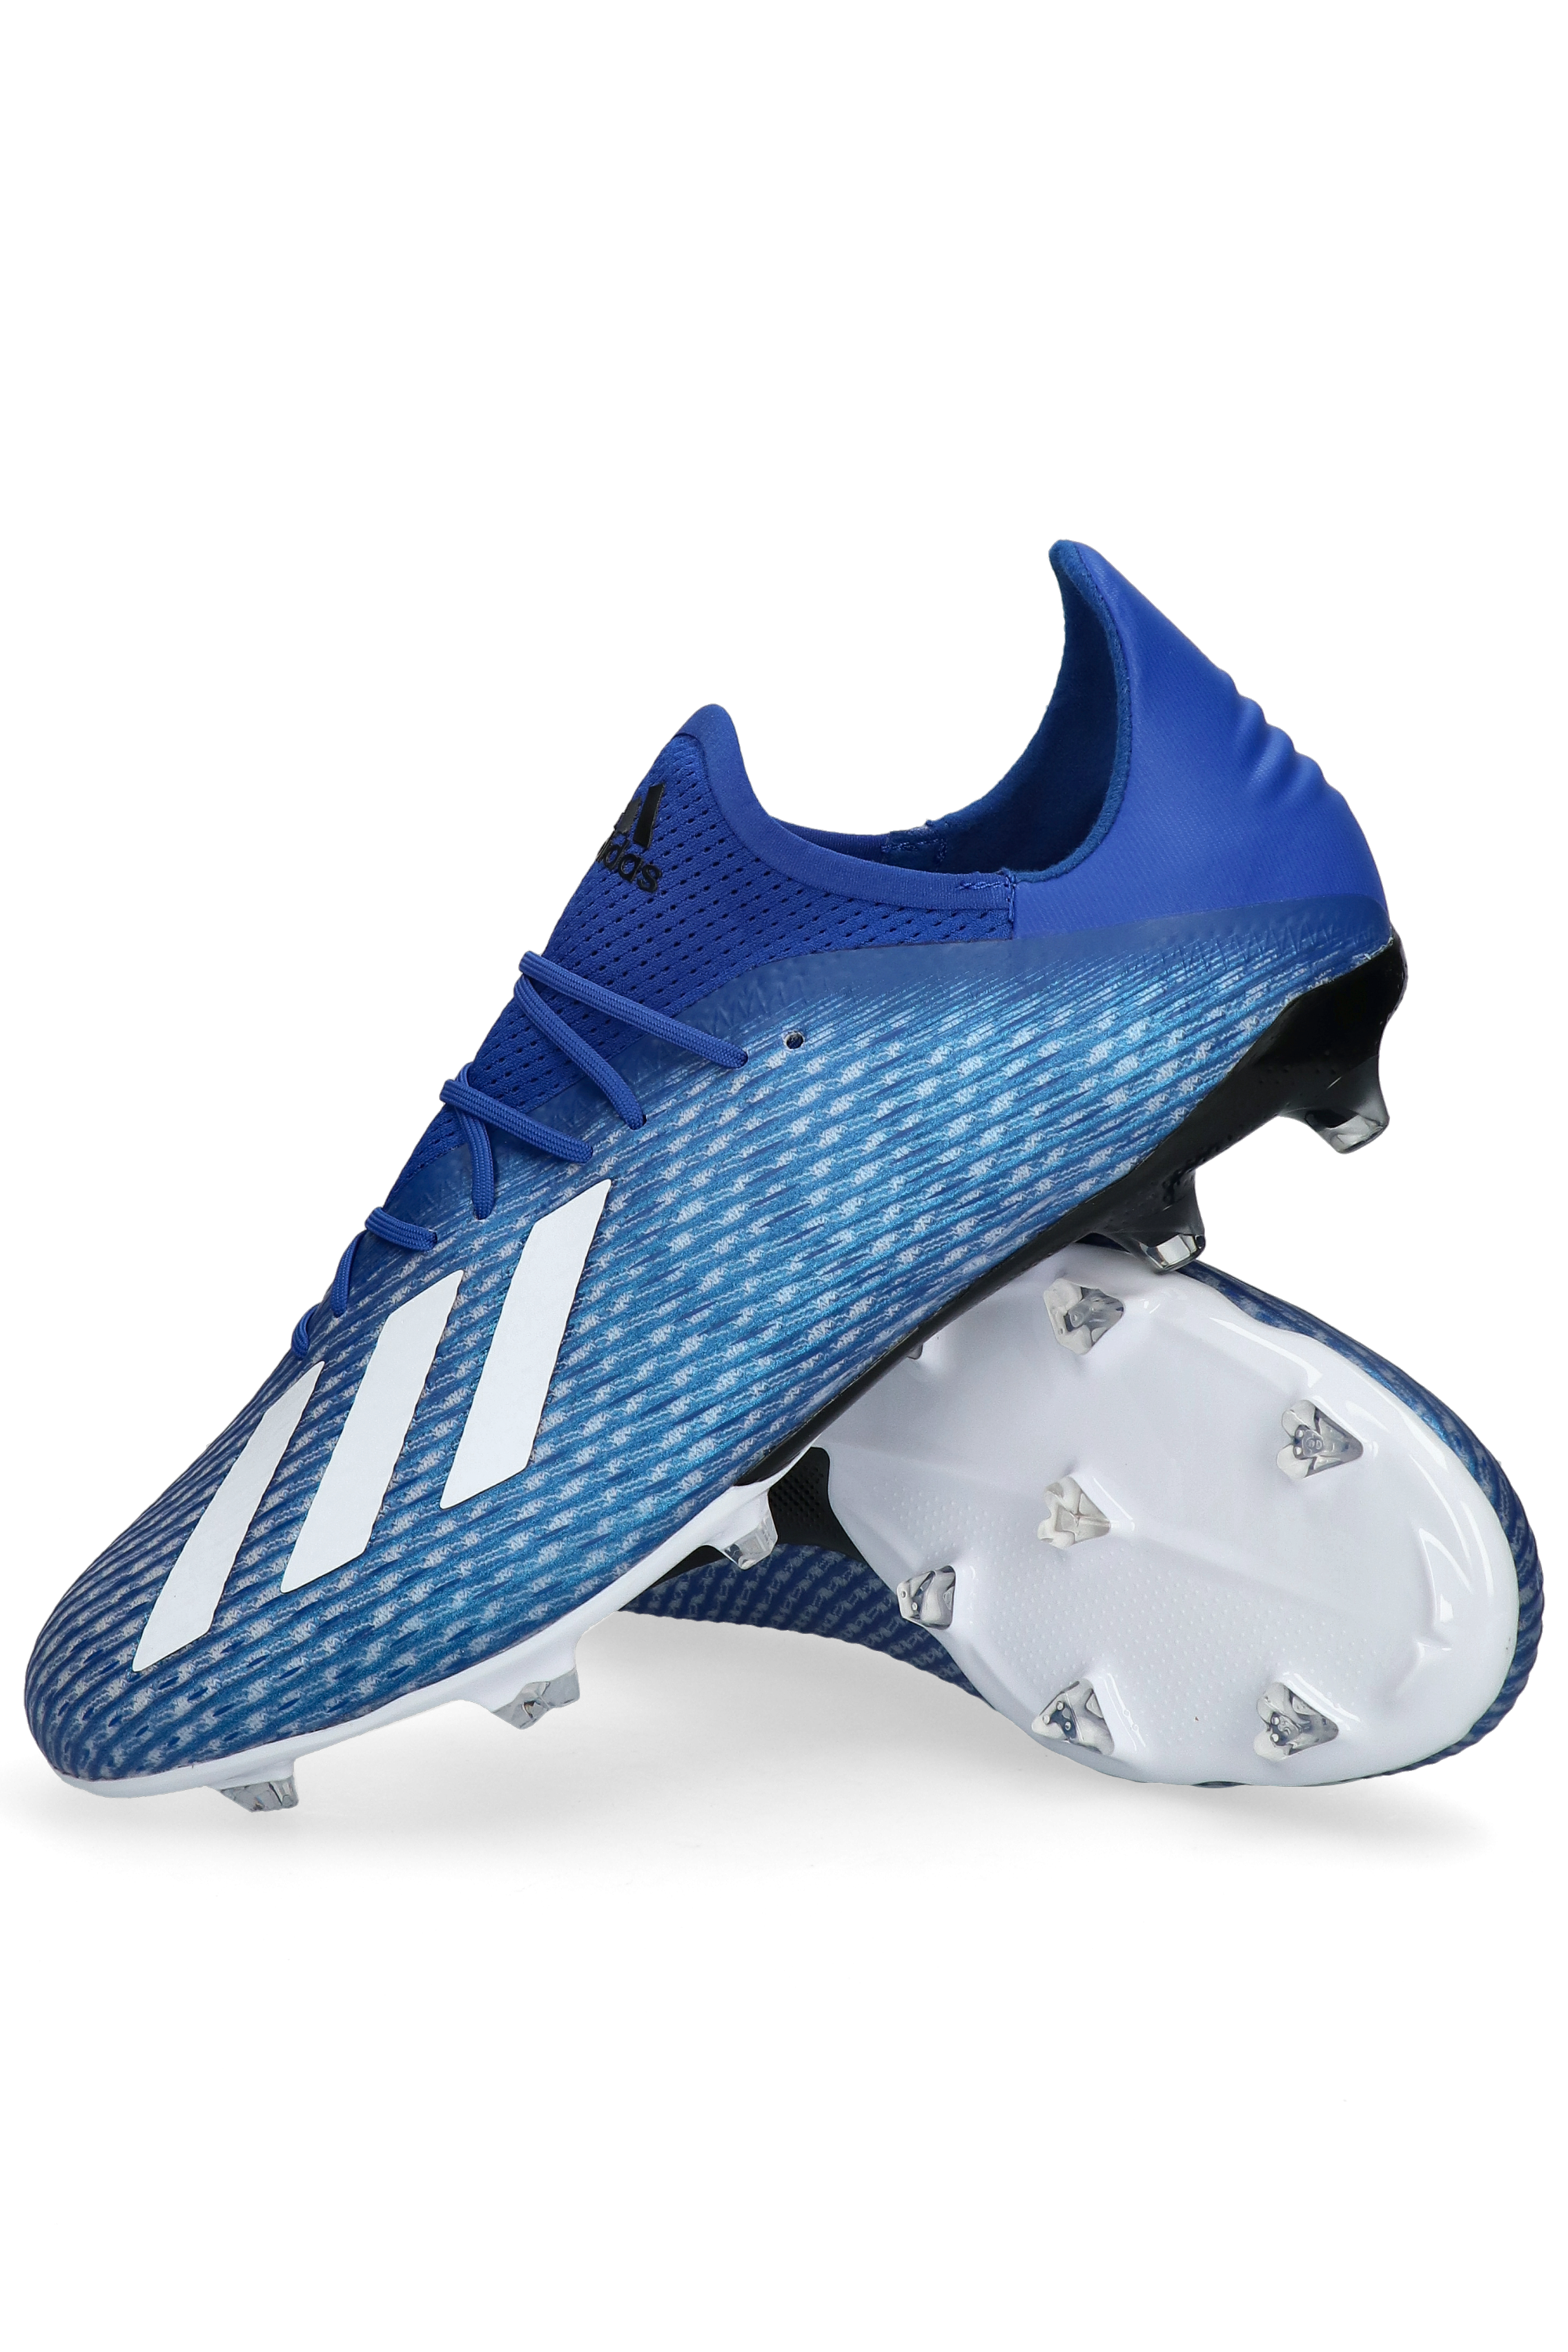 Corrección Permuta Menos adidas X 19.2 FG Firm Ground Boots | R-GOL.com - Football boots & equipment